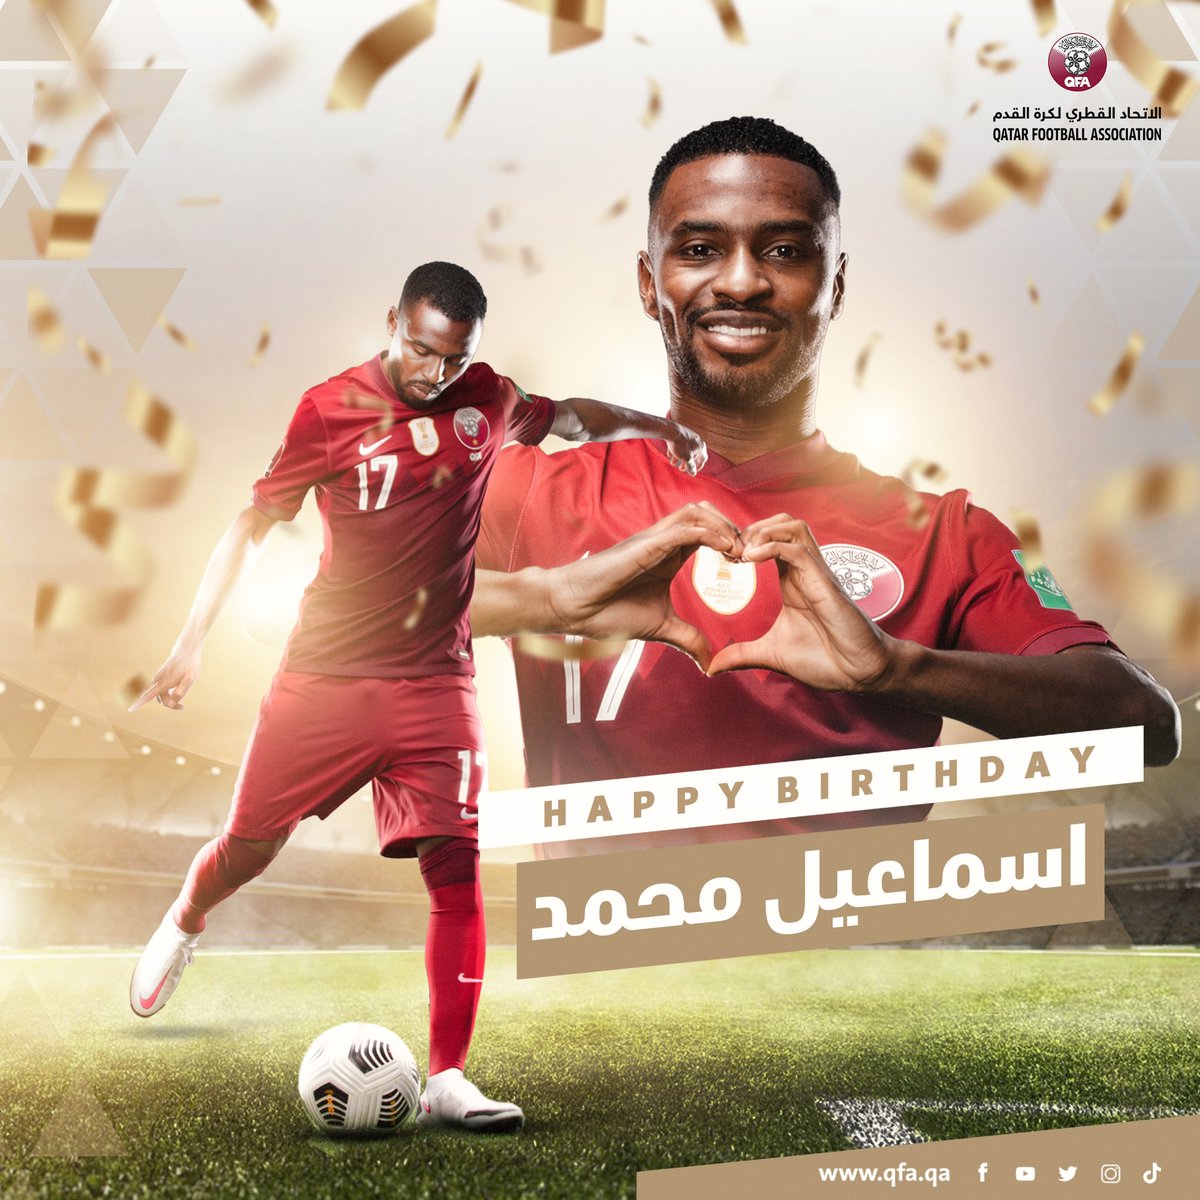 يصادف اليوم ذكرى ميلاد لاعب منتخبنا الوطني اسماعيل محمد نتمنى لك عام سعيد